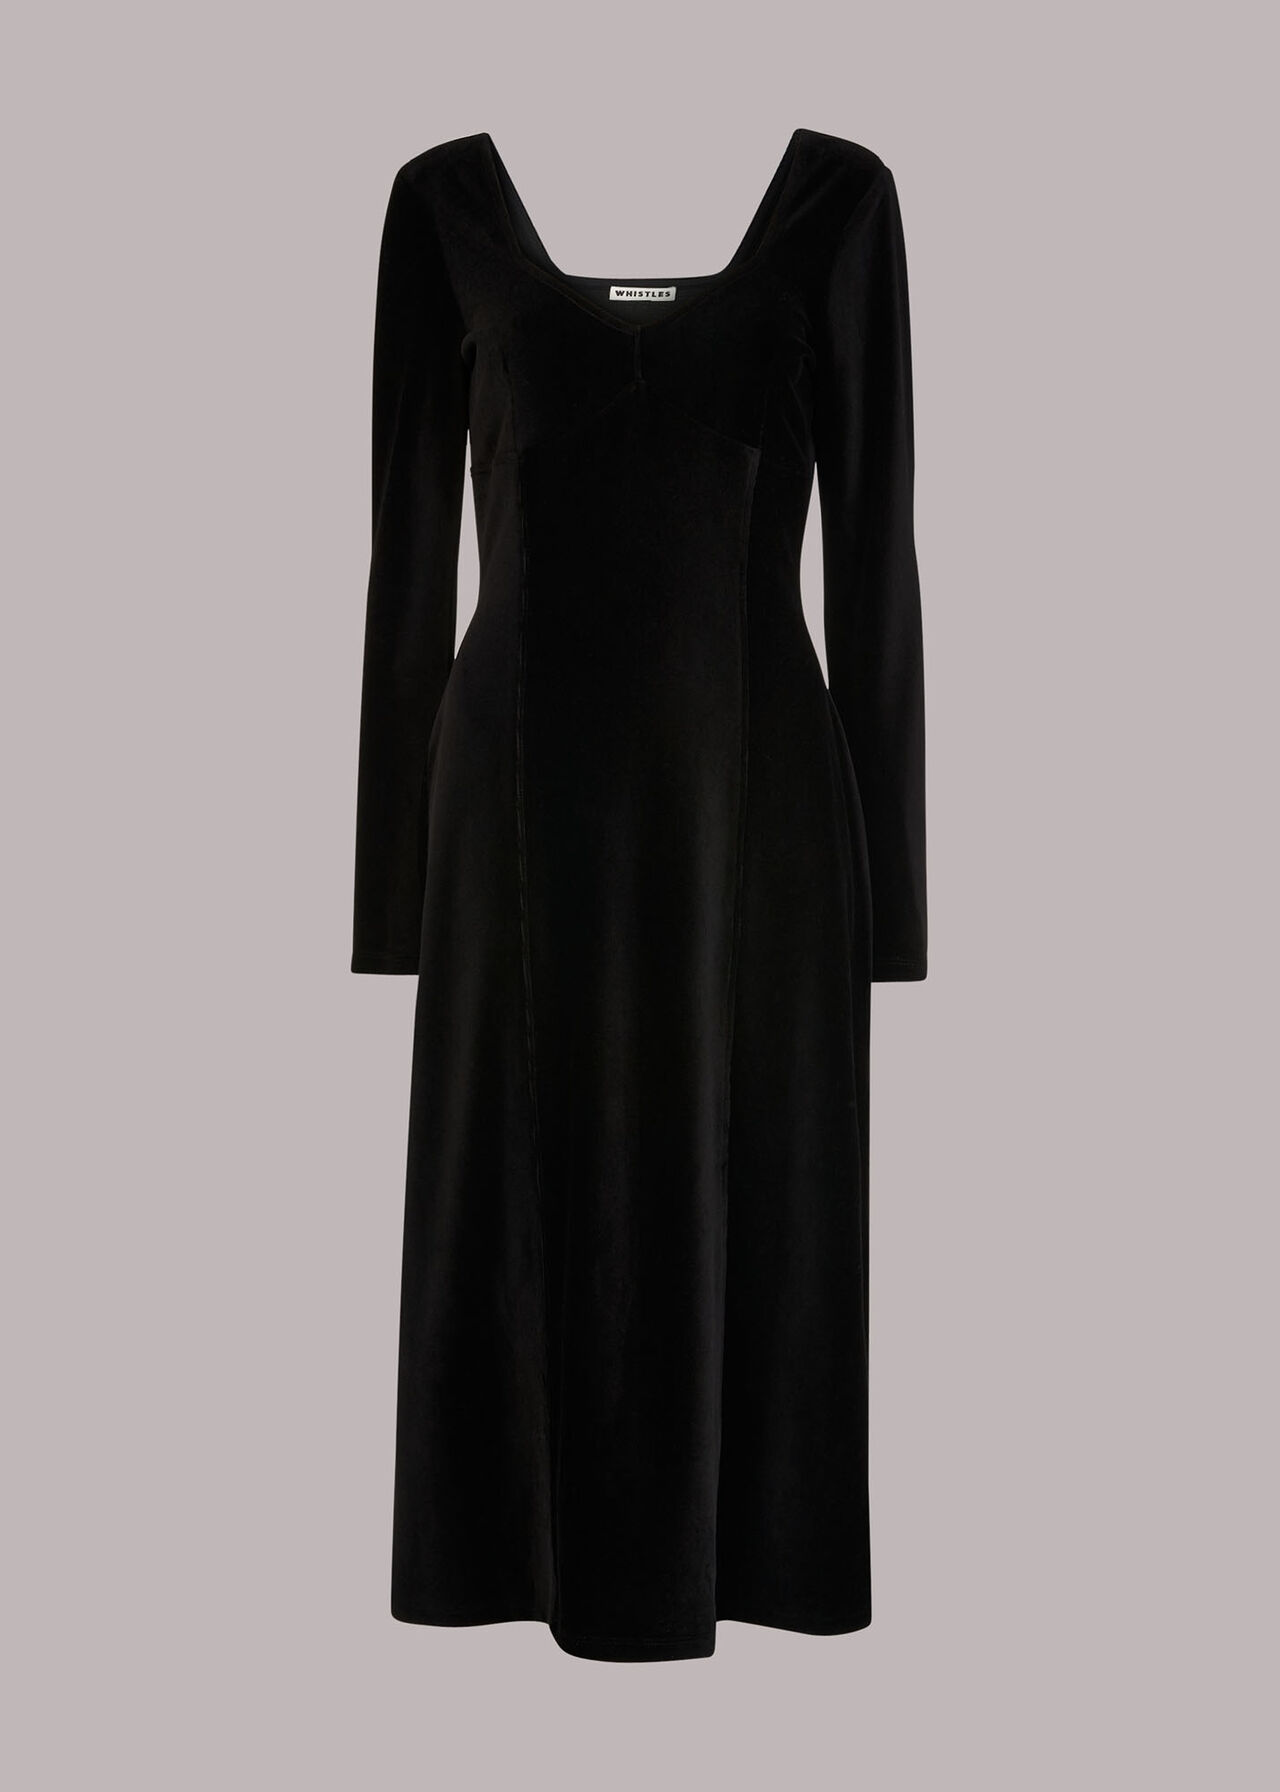 Black Cord Velvet Bust Detail Dress | WHISTLES